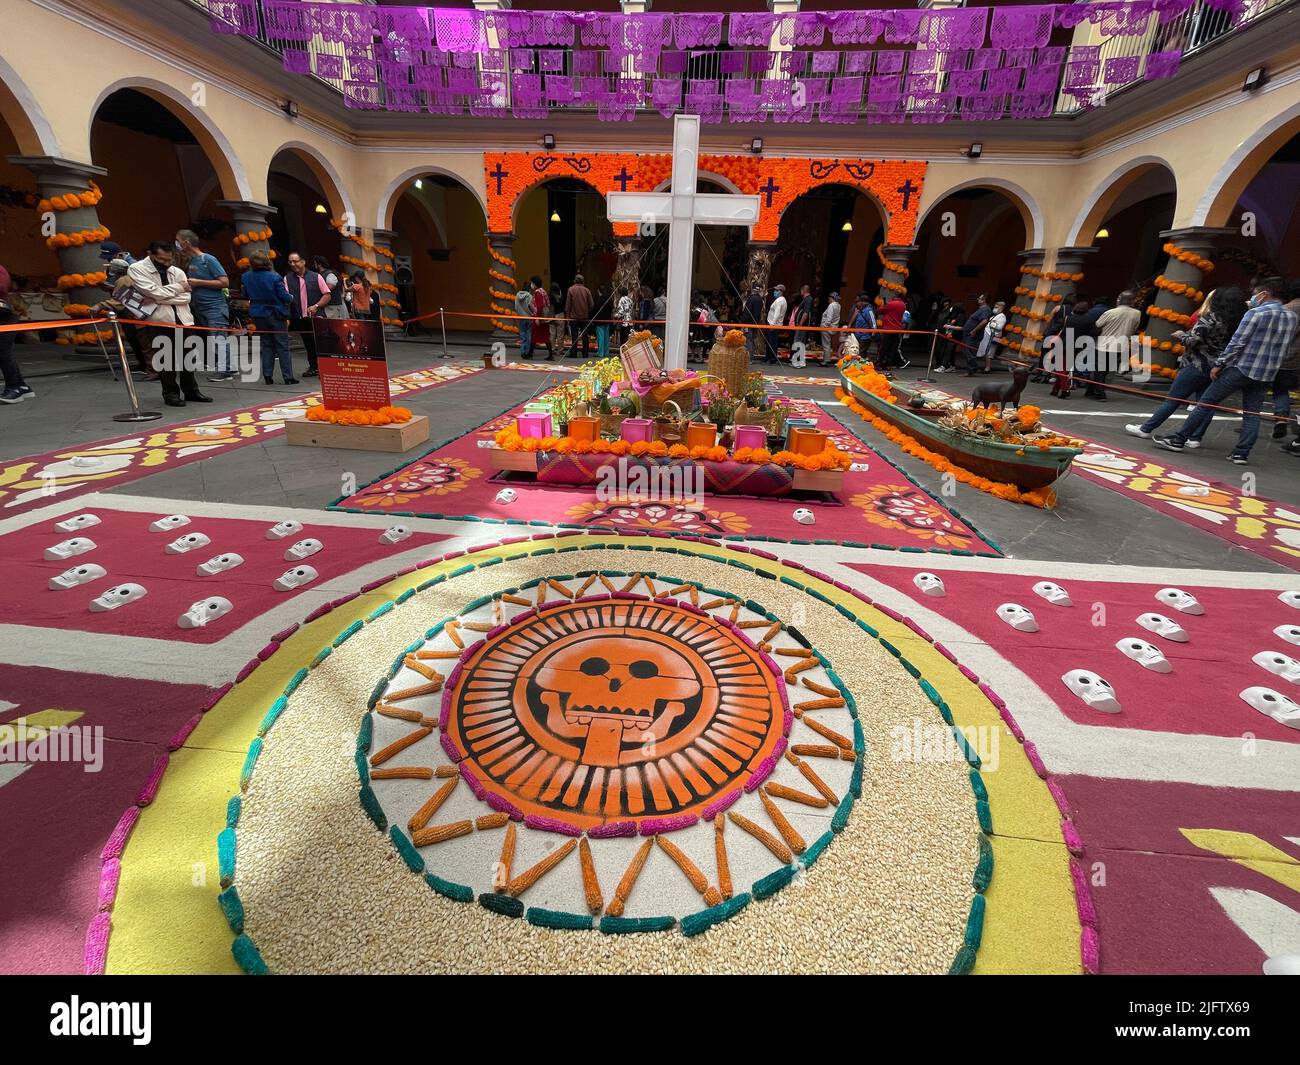 Altare tradizionale o offerta per i morti in dia de Muertos, in Messico Foto Stock